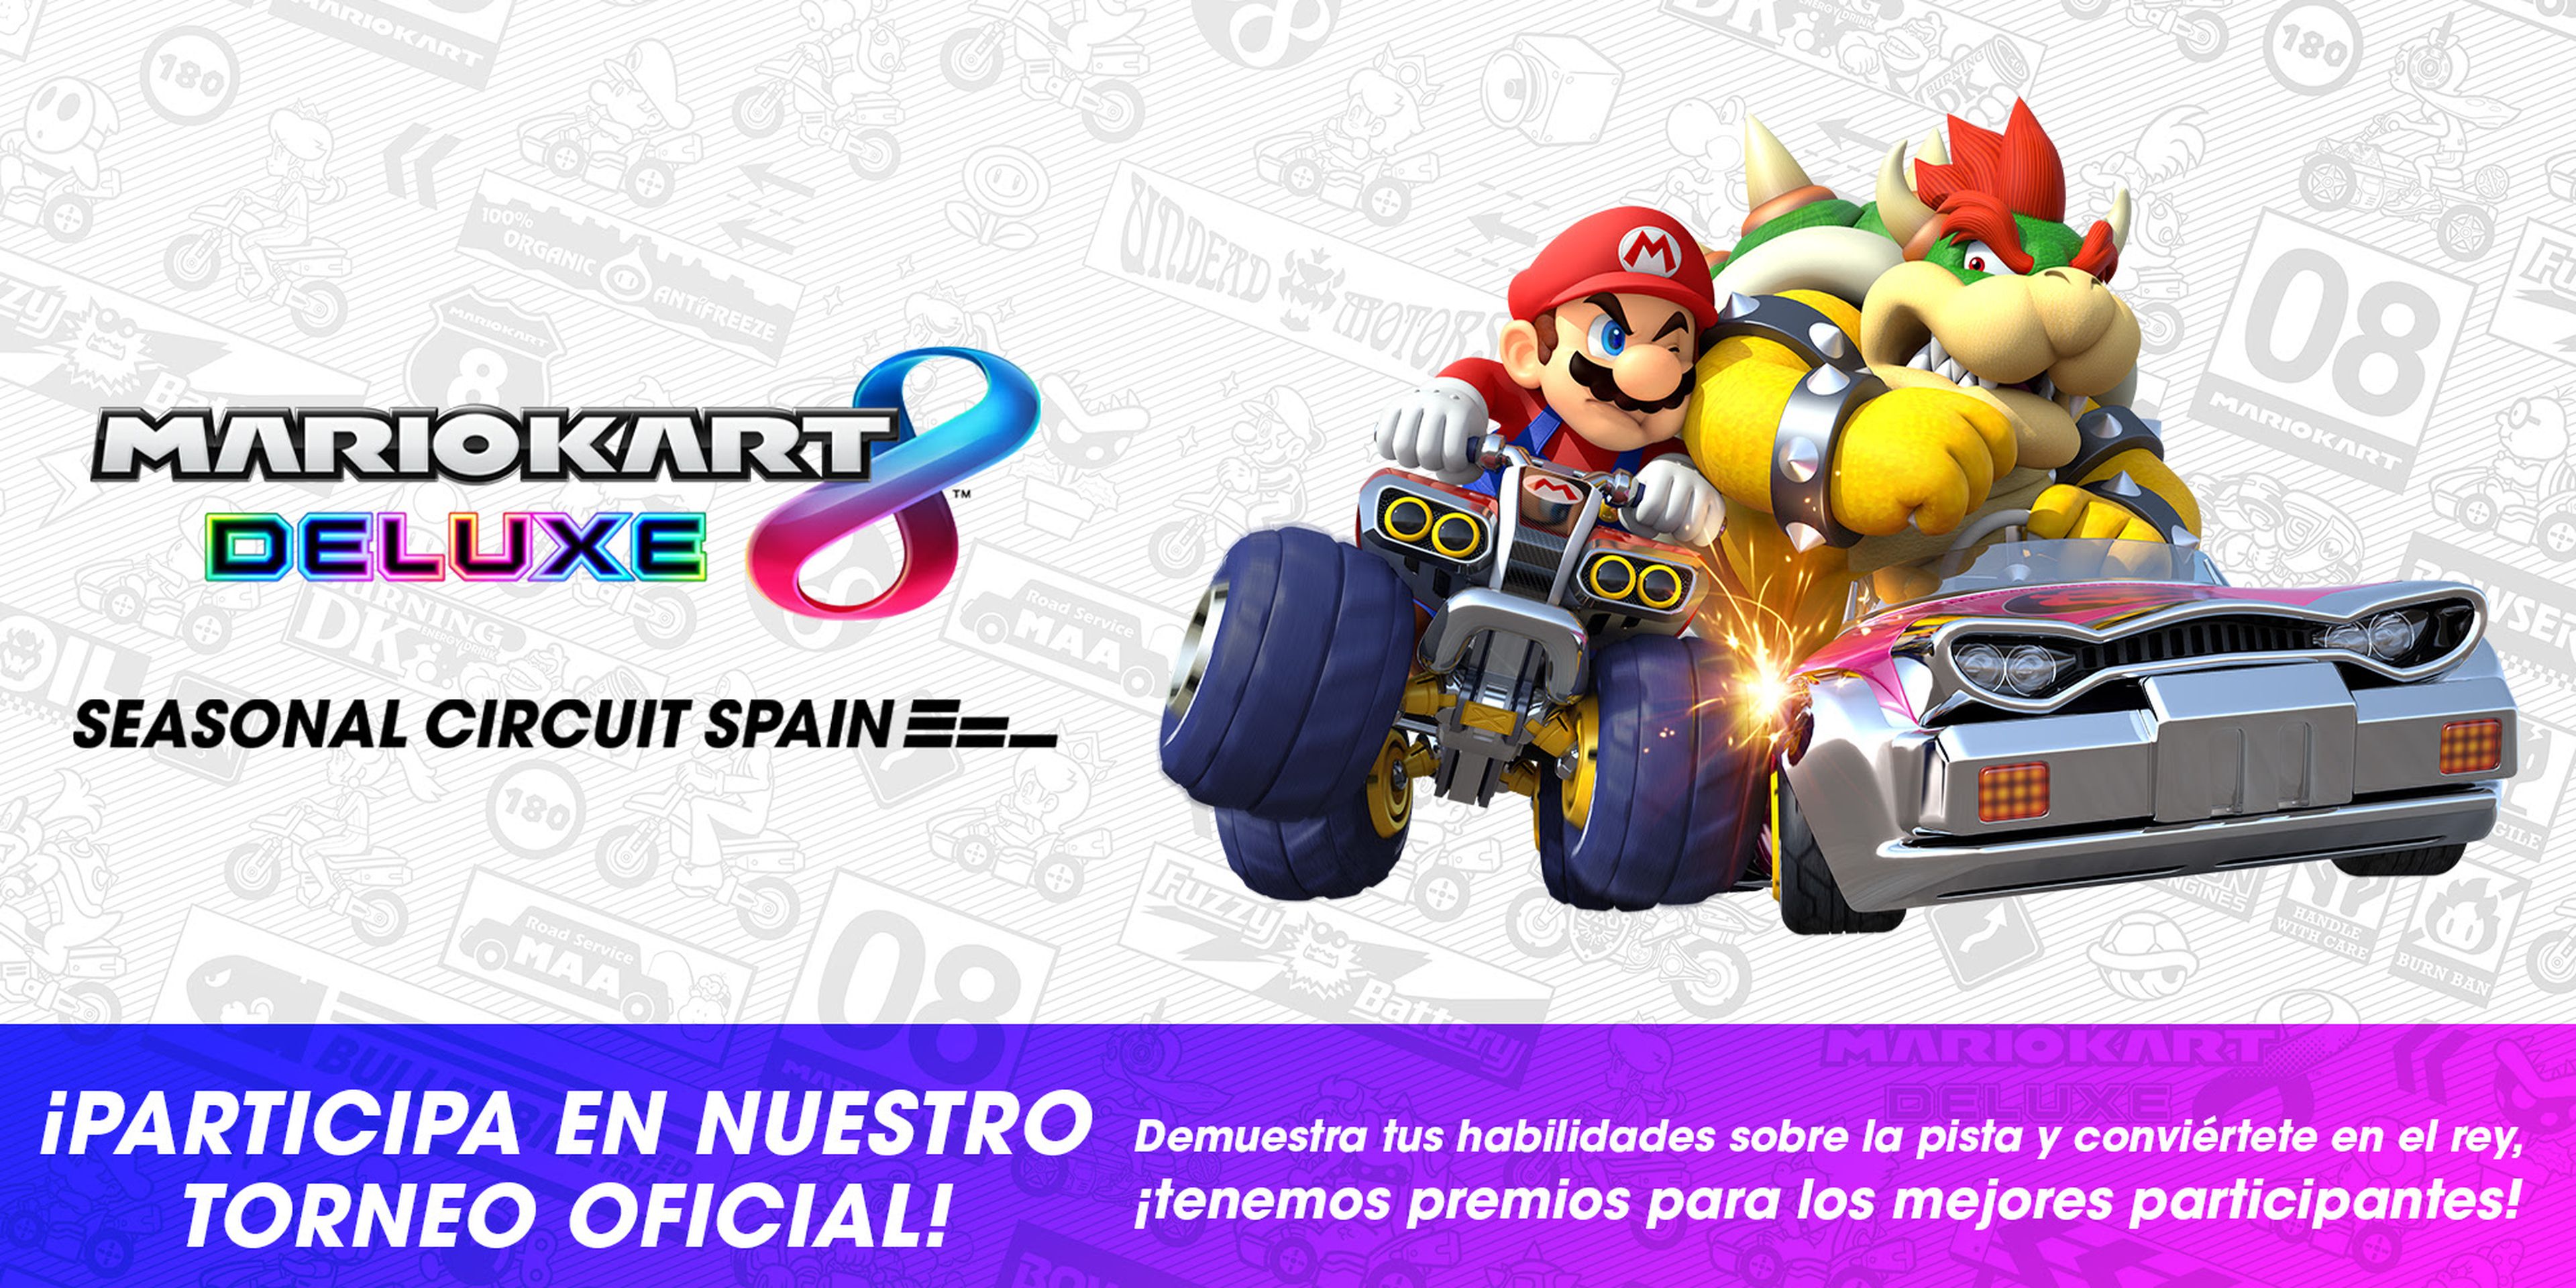 Mario Kart 8 Deluxe Seasonal Circuit Spain